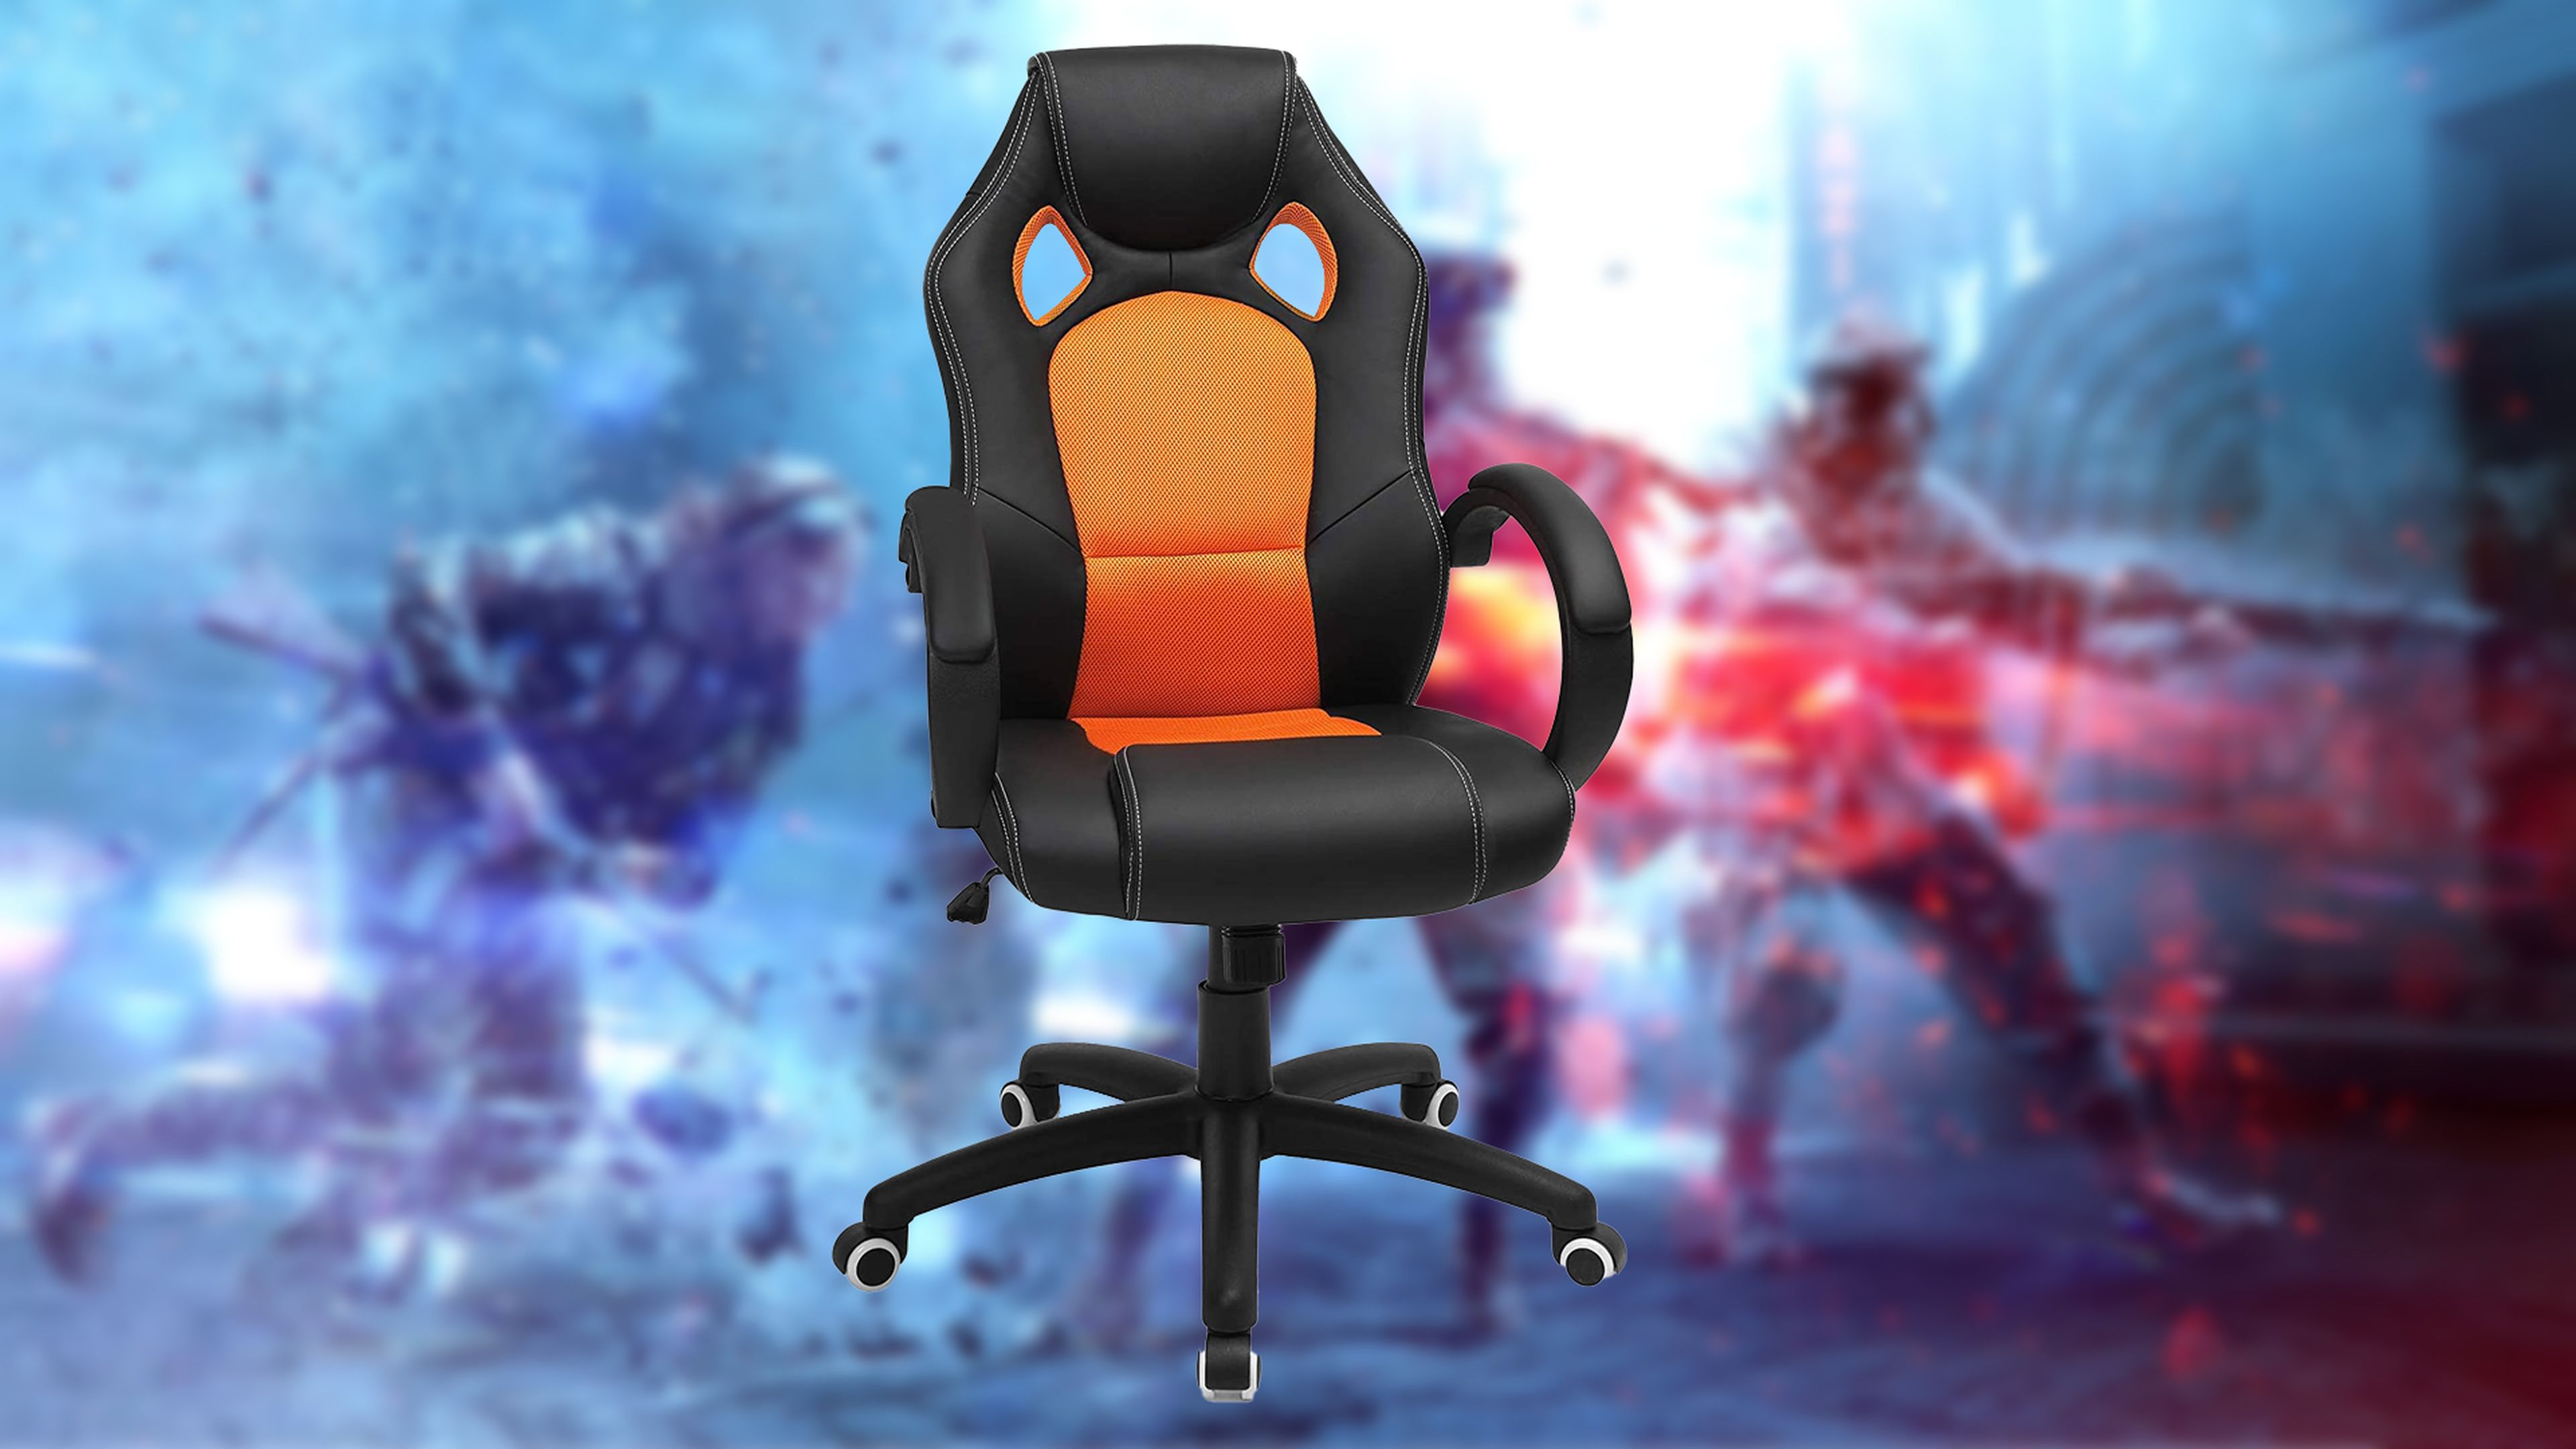 Estas son las mejores sillas gaming baratas que puedes comprar